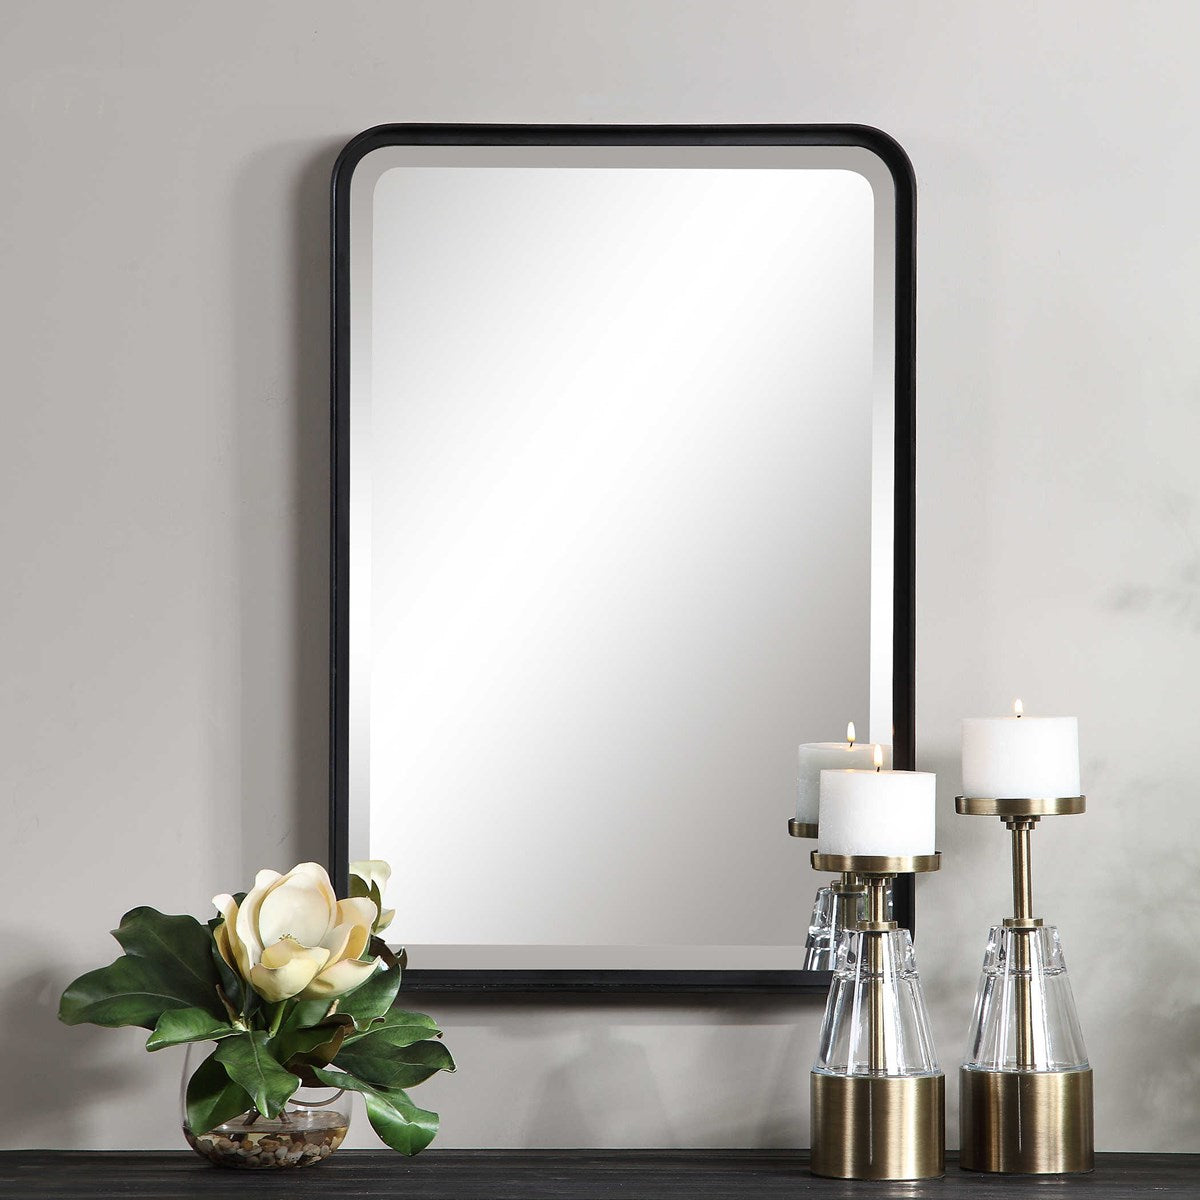 Black vanity mirror